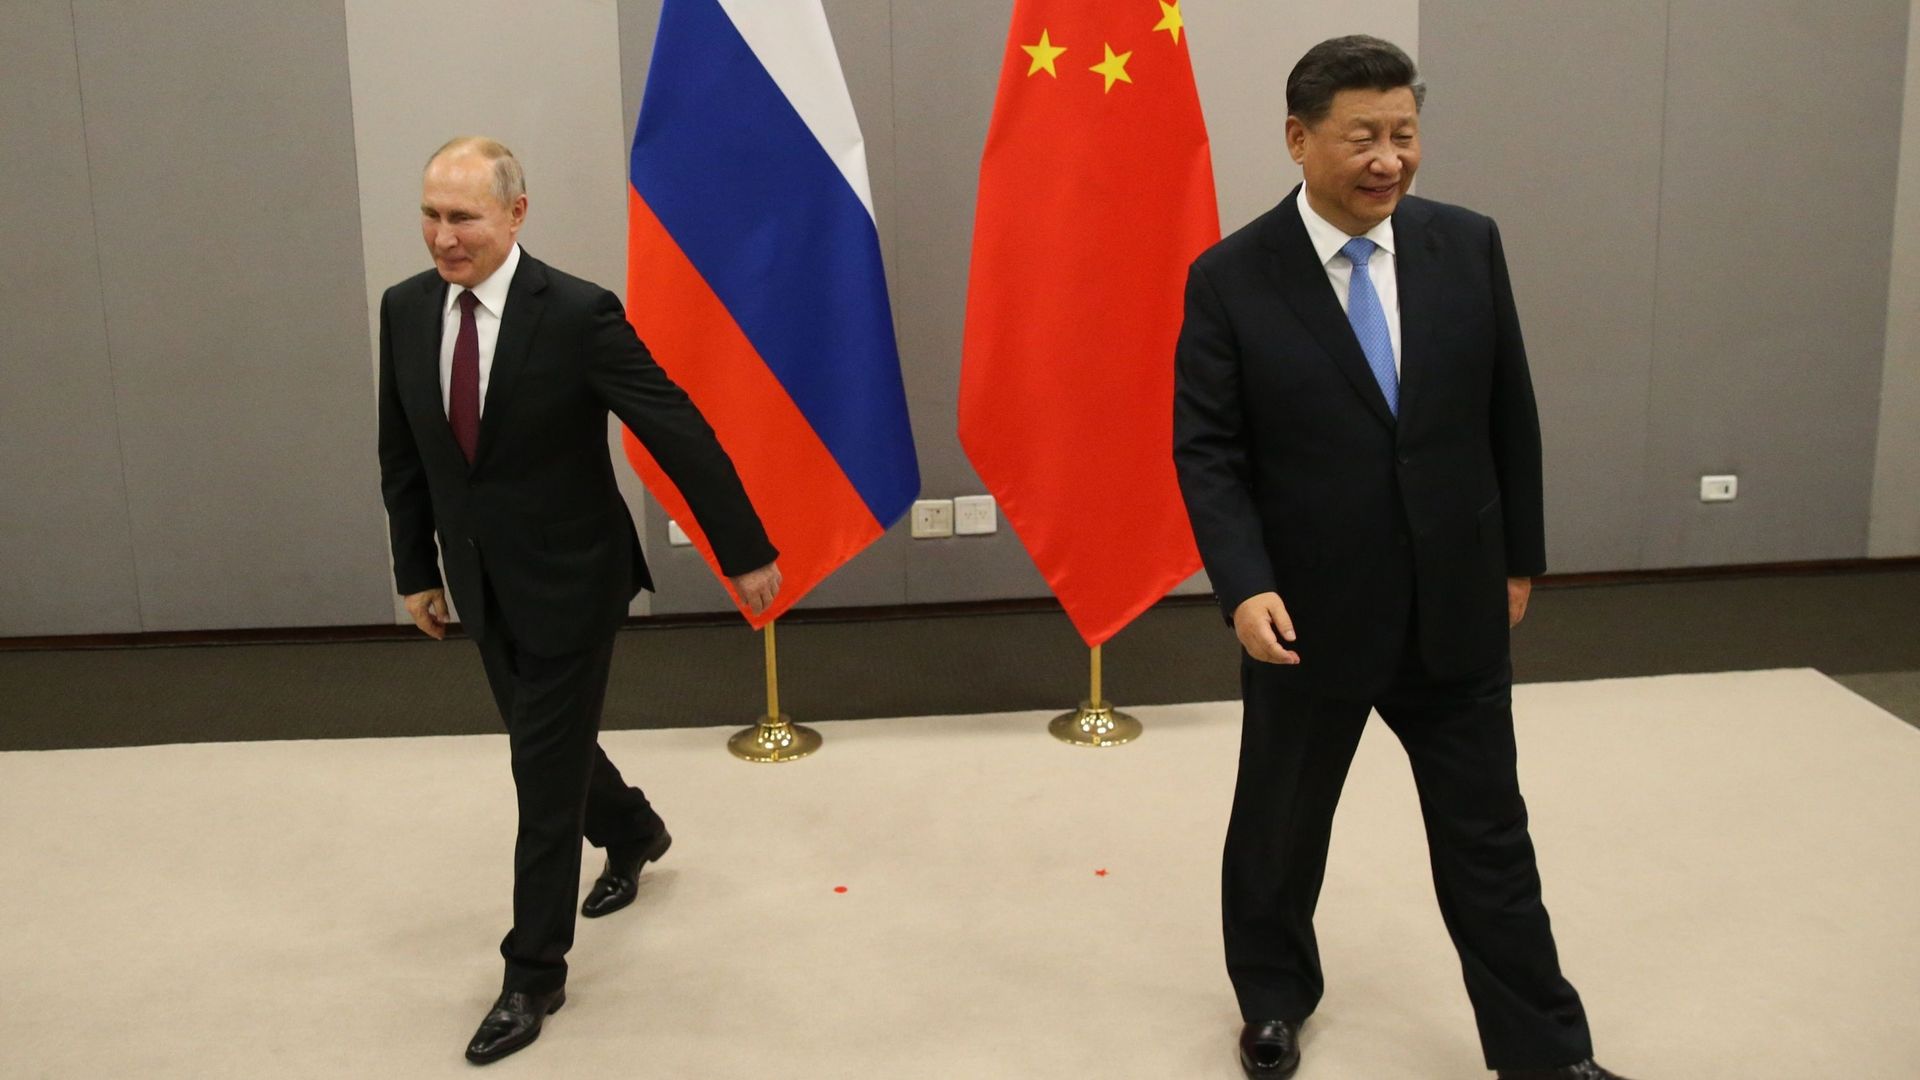 Le président russe Vladimir Poutine et le président chinois Xi Jinping lors de leur réunion bilatérale le 13 novembre 2019 à Brasilia, au Brésil.